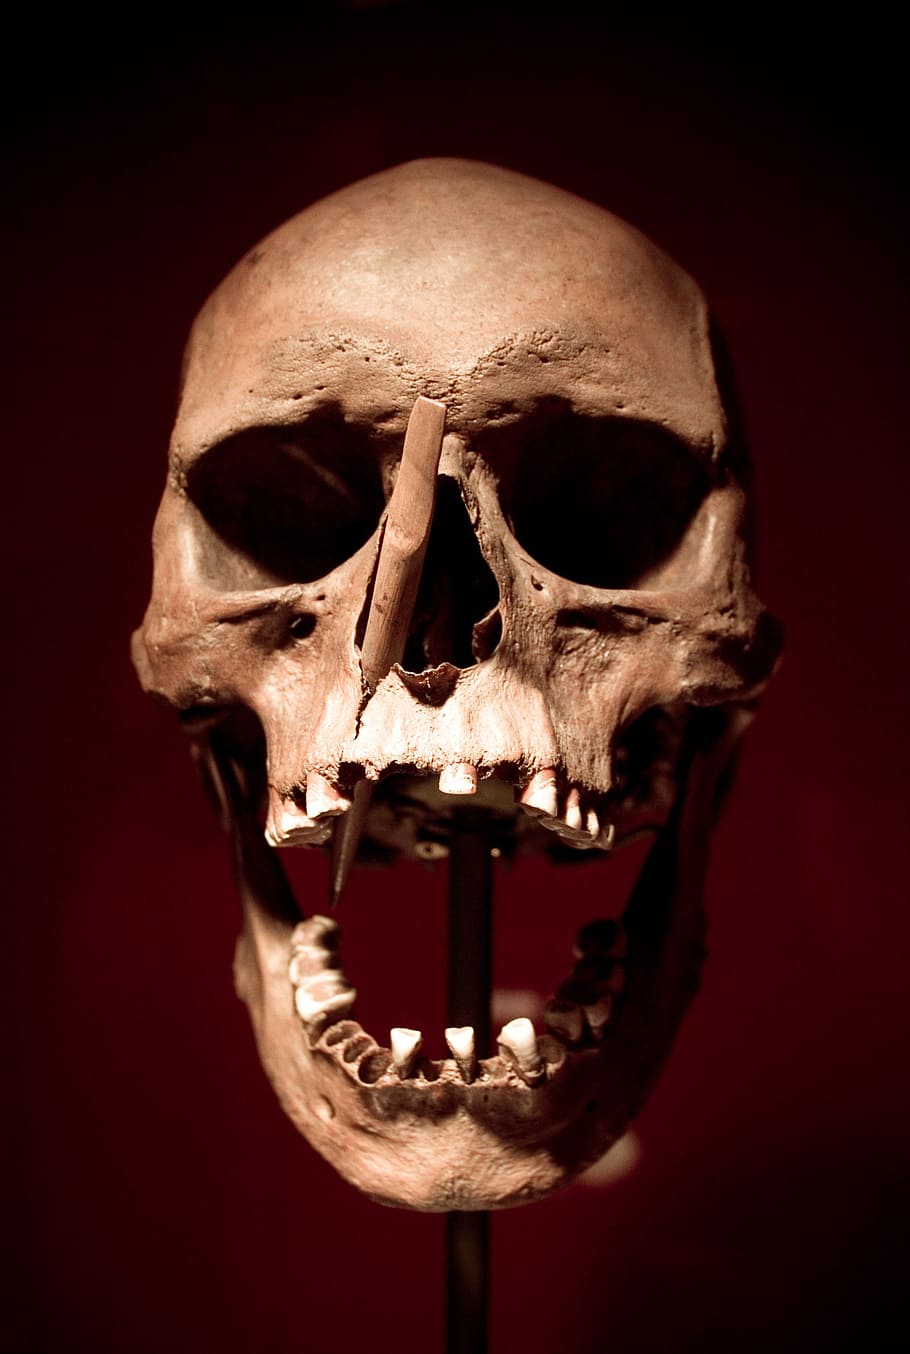 ベージュの頭蓋骨の装飾, 頭蓋骨, どくろ, 死, 骨, クリプト, スケルトン, 矢印, 矢じり, ハロウィーン